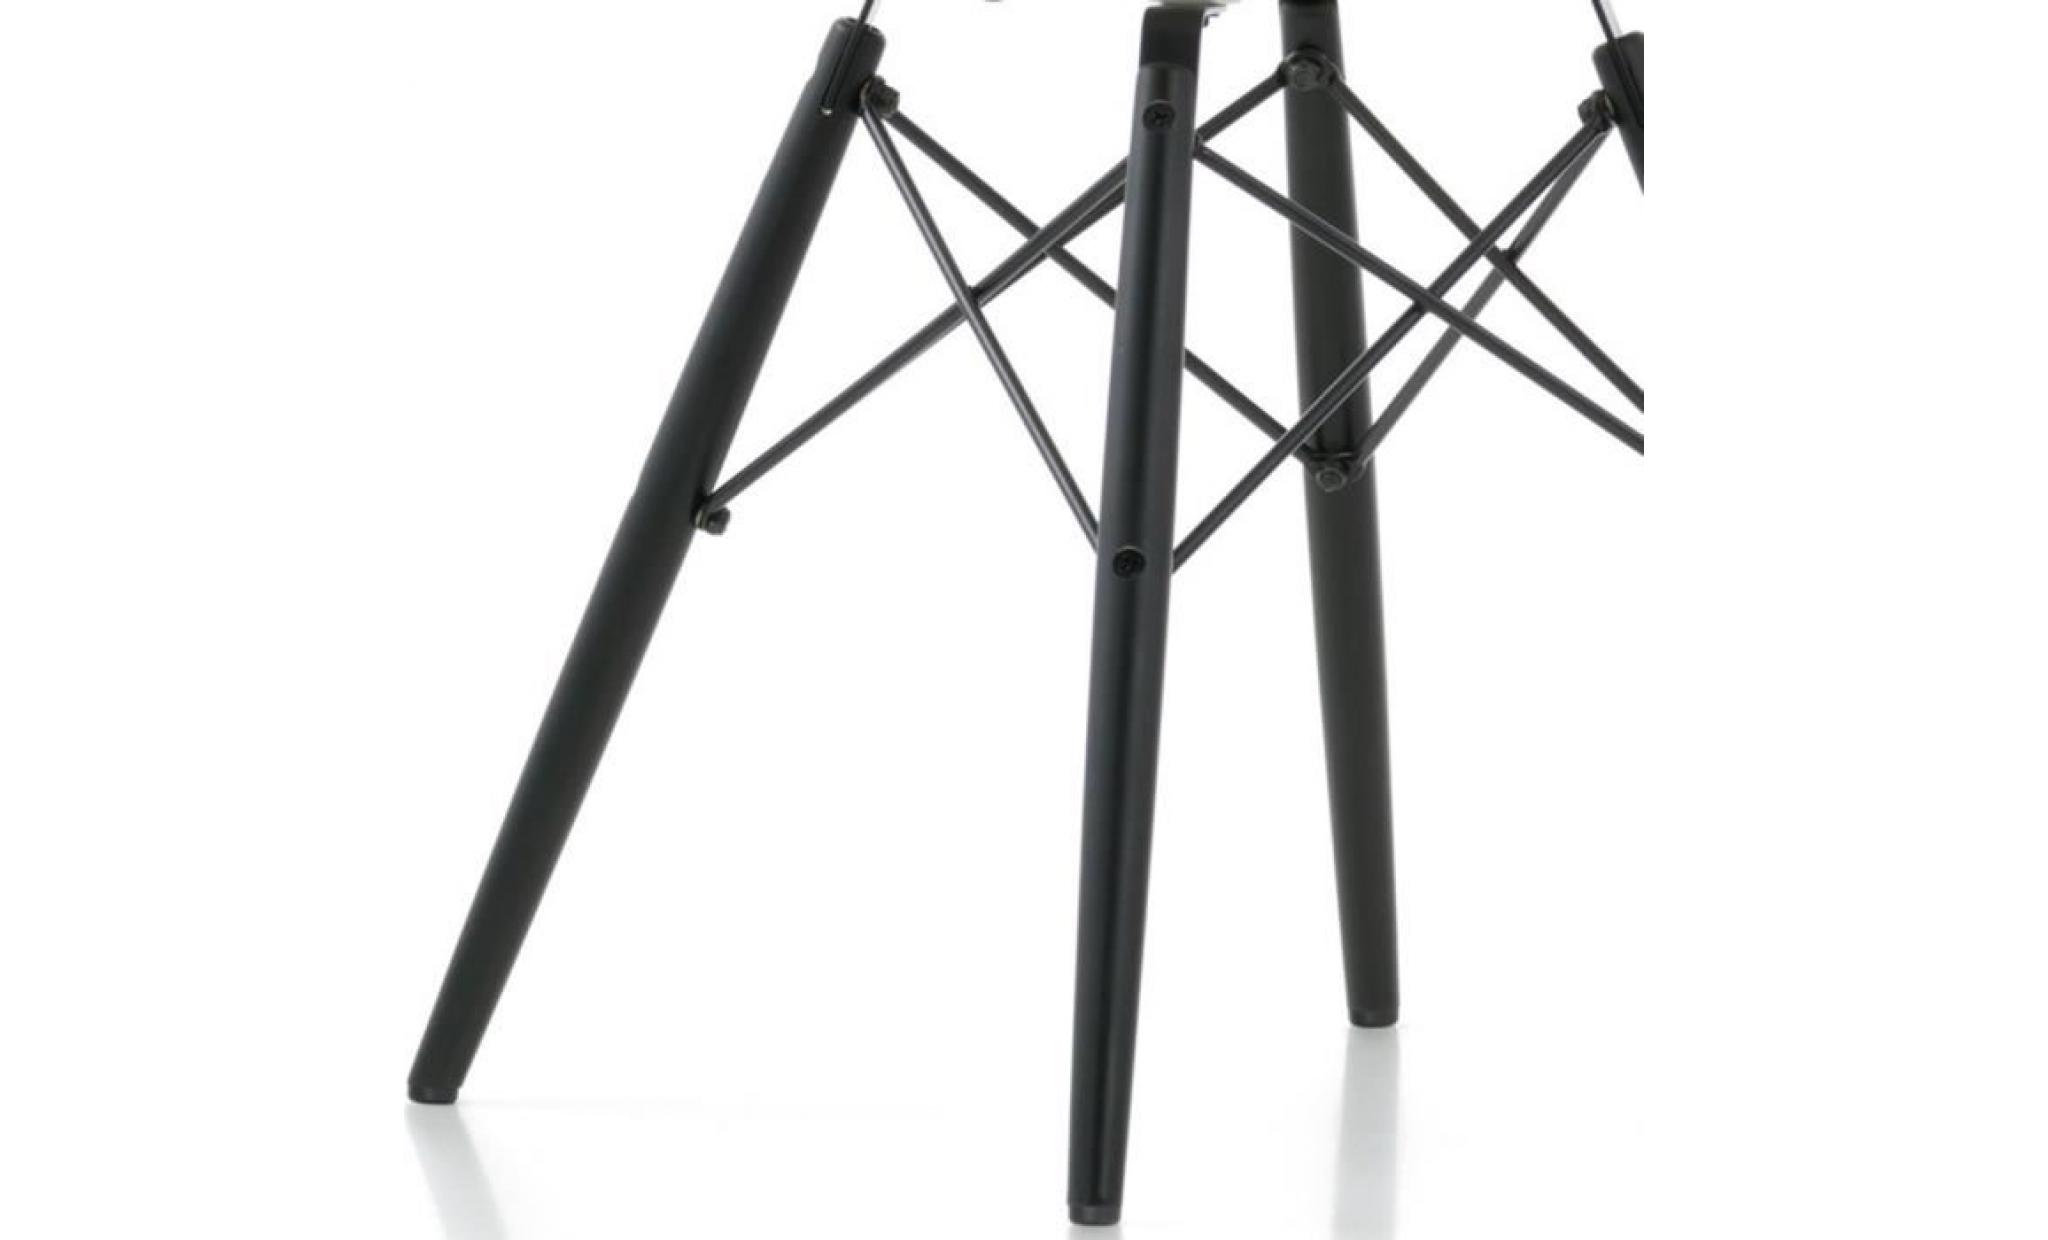 1 x fauteuil design retro inspiration eames daw pieds en bois noir assise silver mobistyl® pas cher